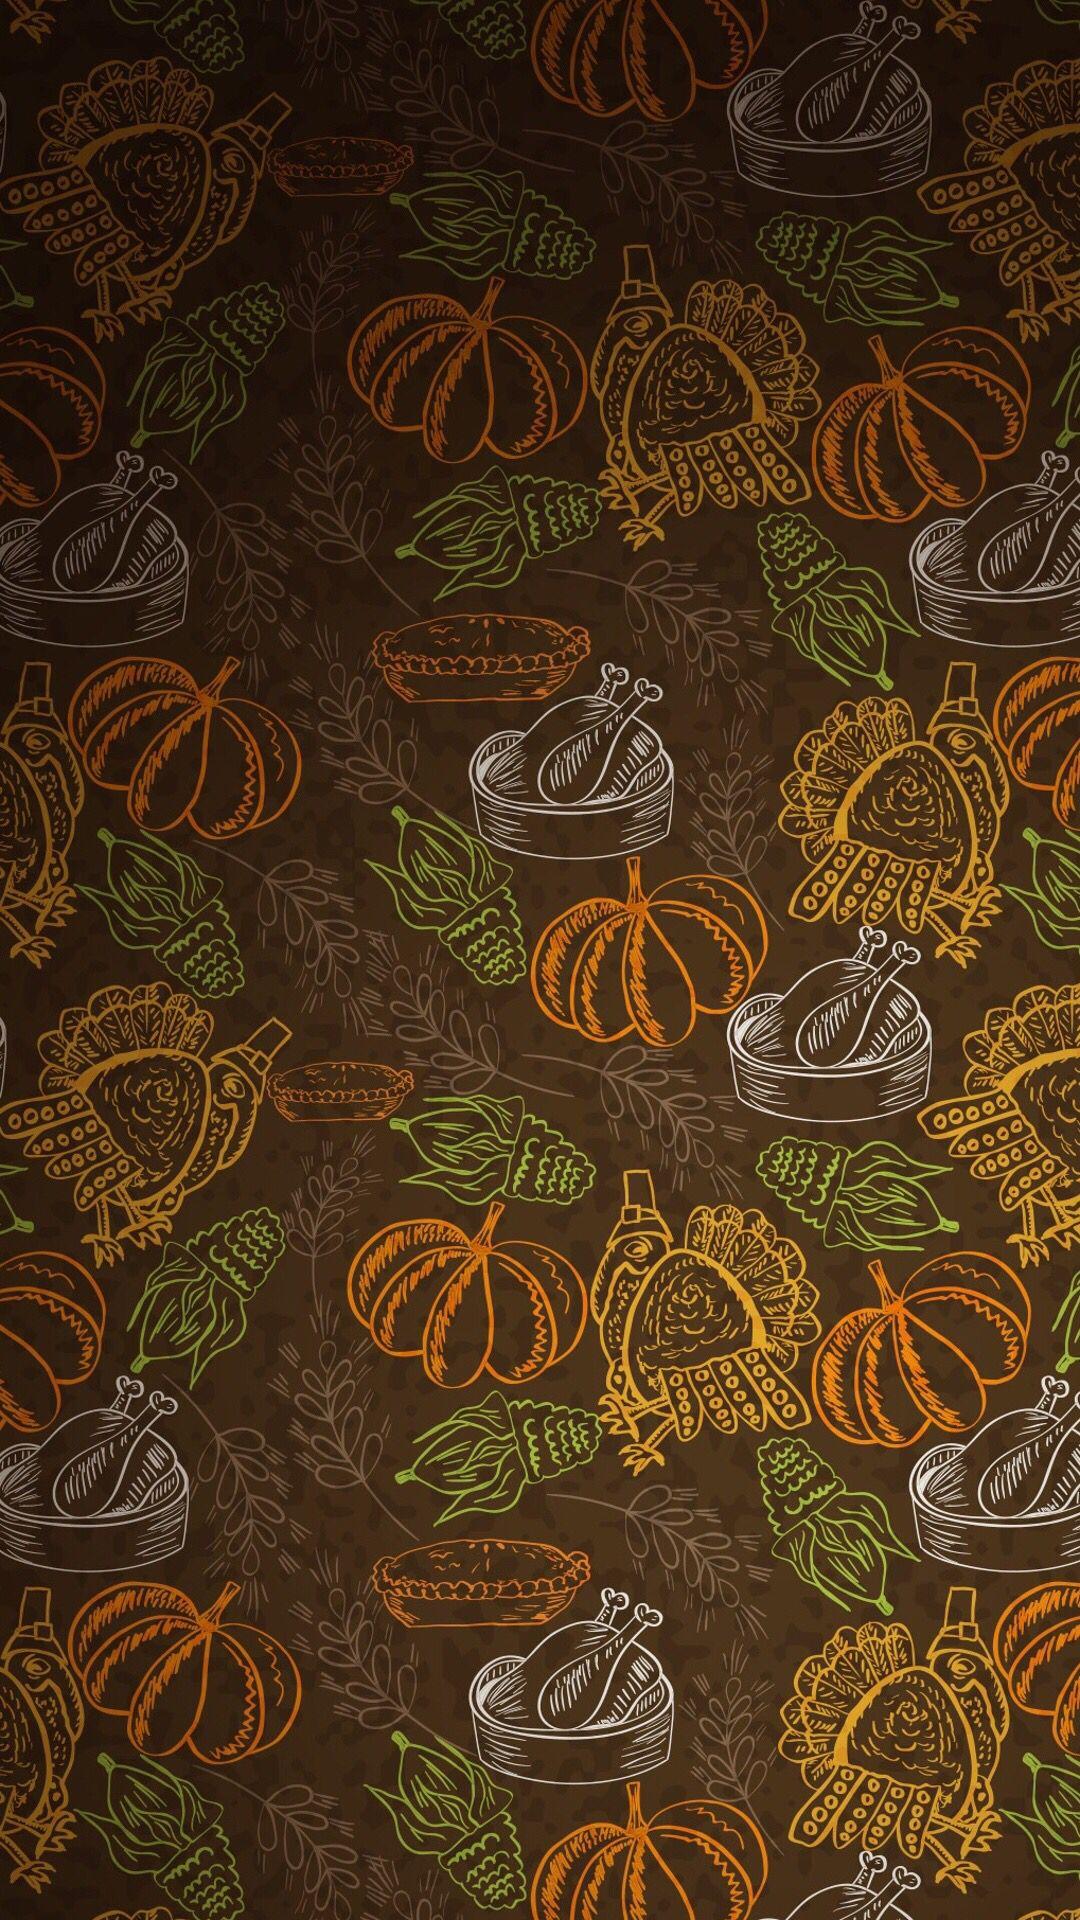 1080x1920 Thanksgiving wallpaper - Zedge. Thanksgiving Wallpaper